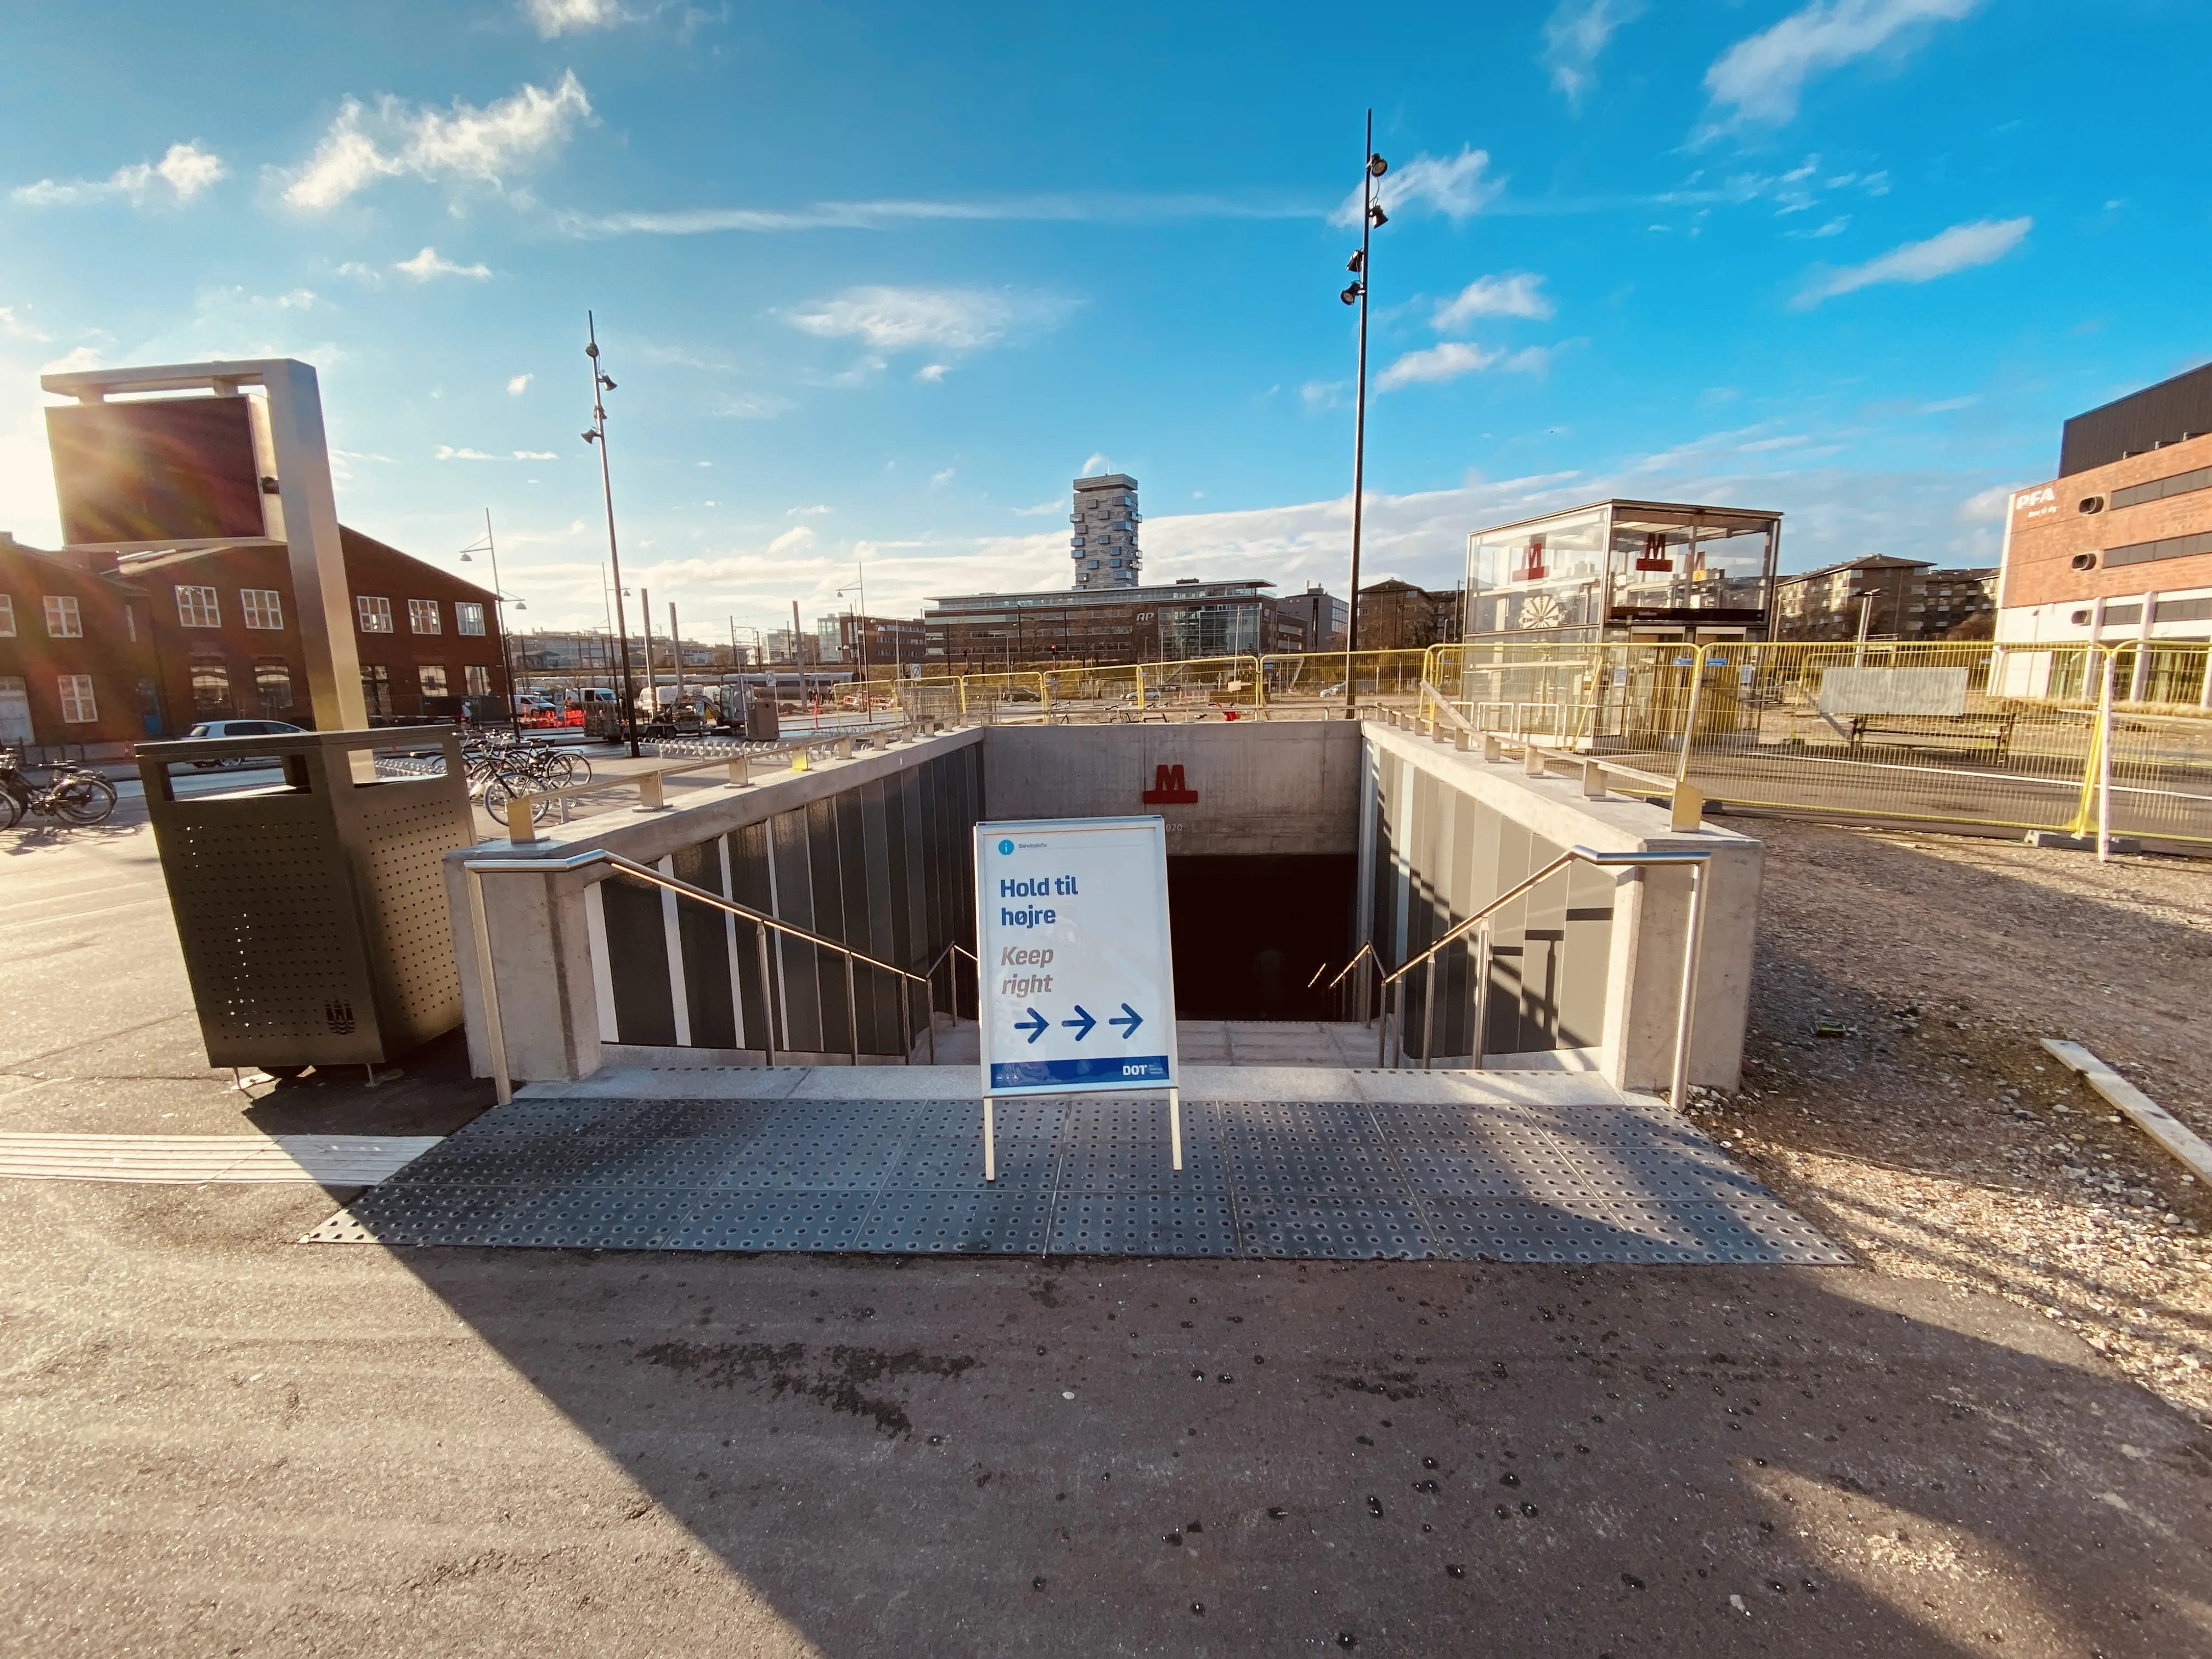 Billede af Nordhavn Metrostation.